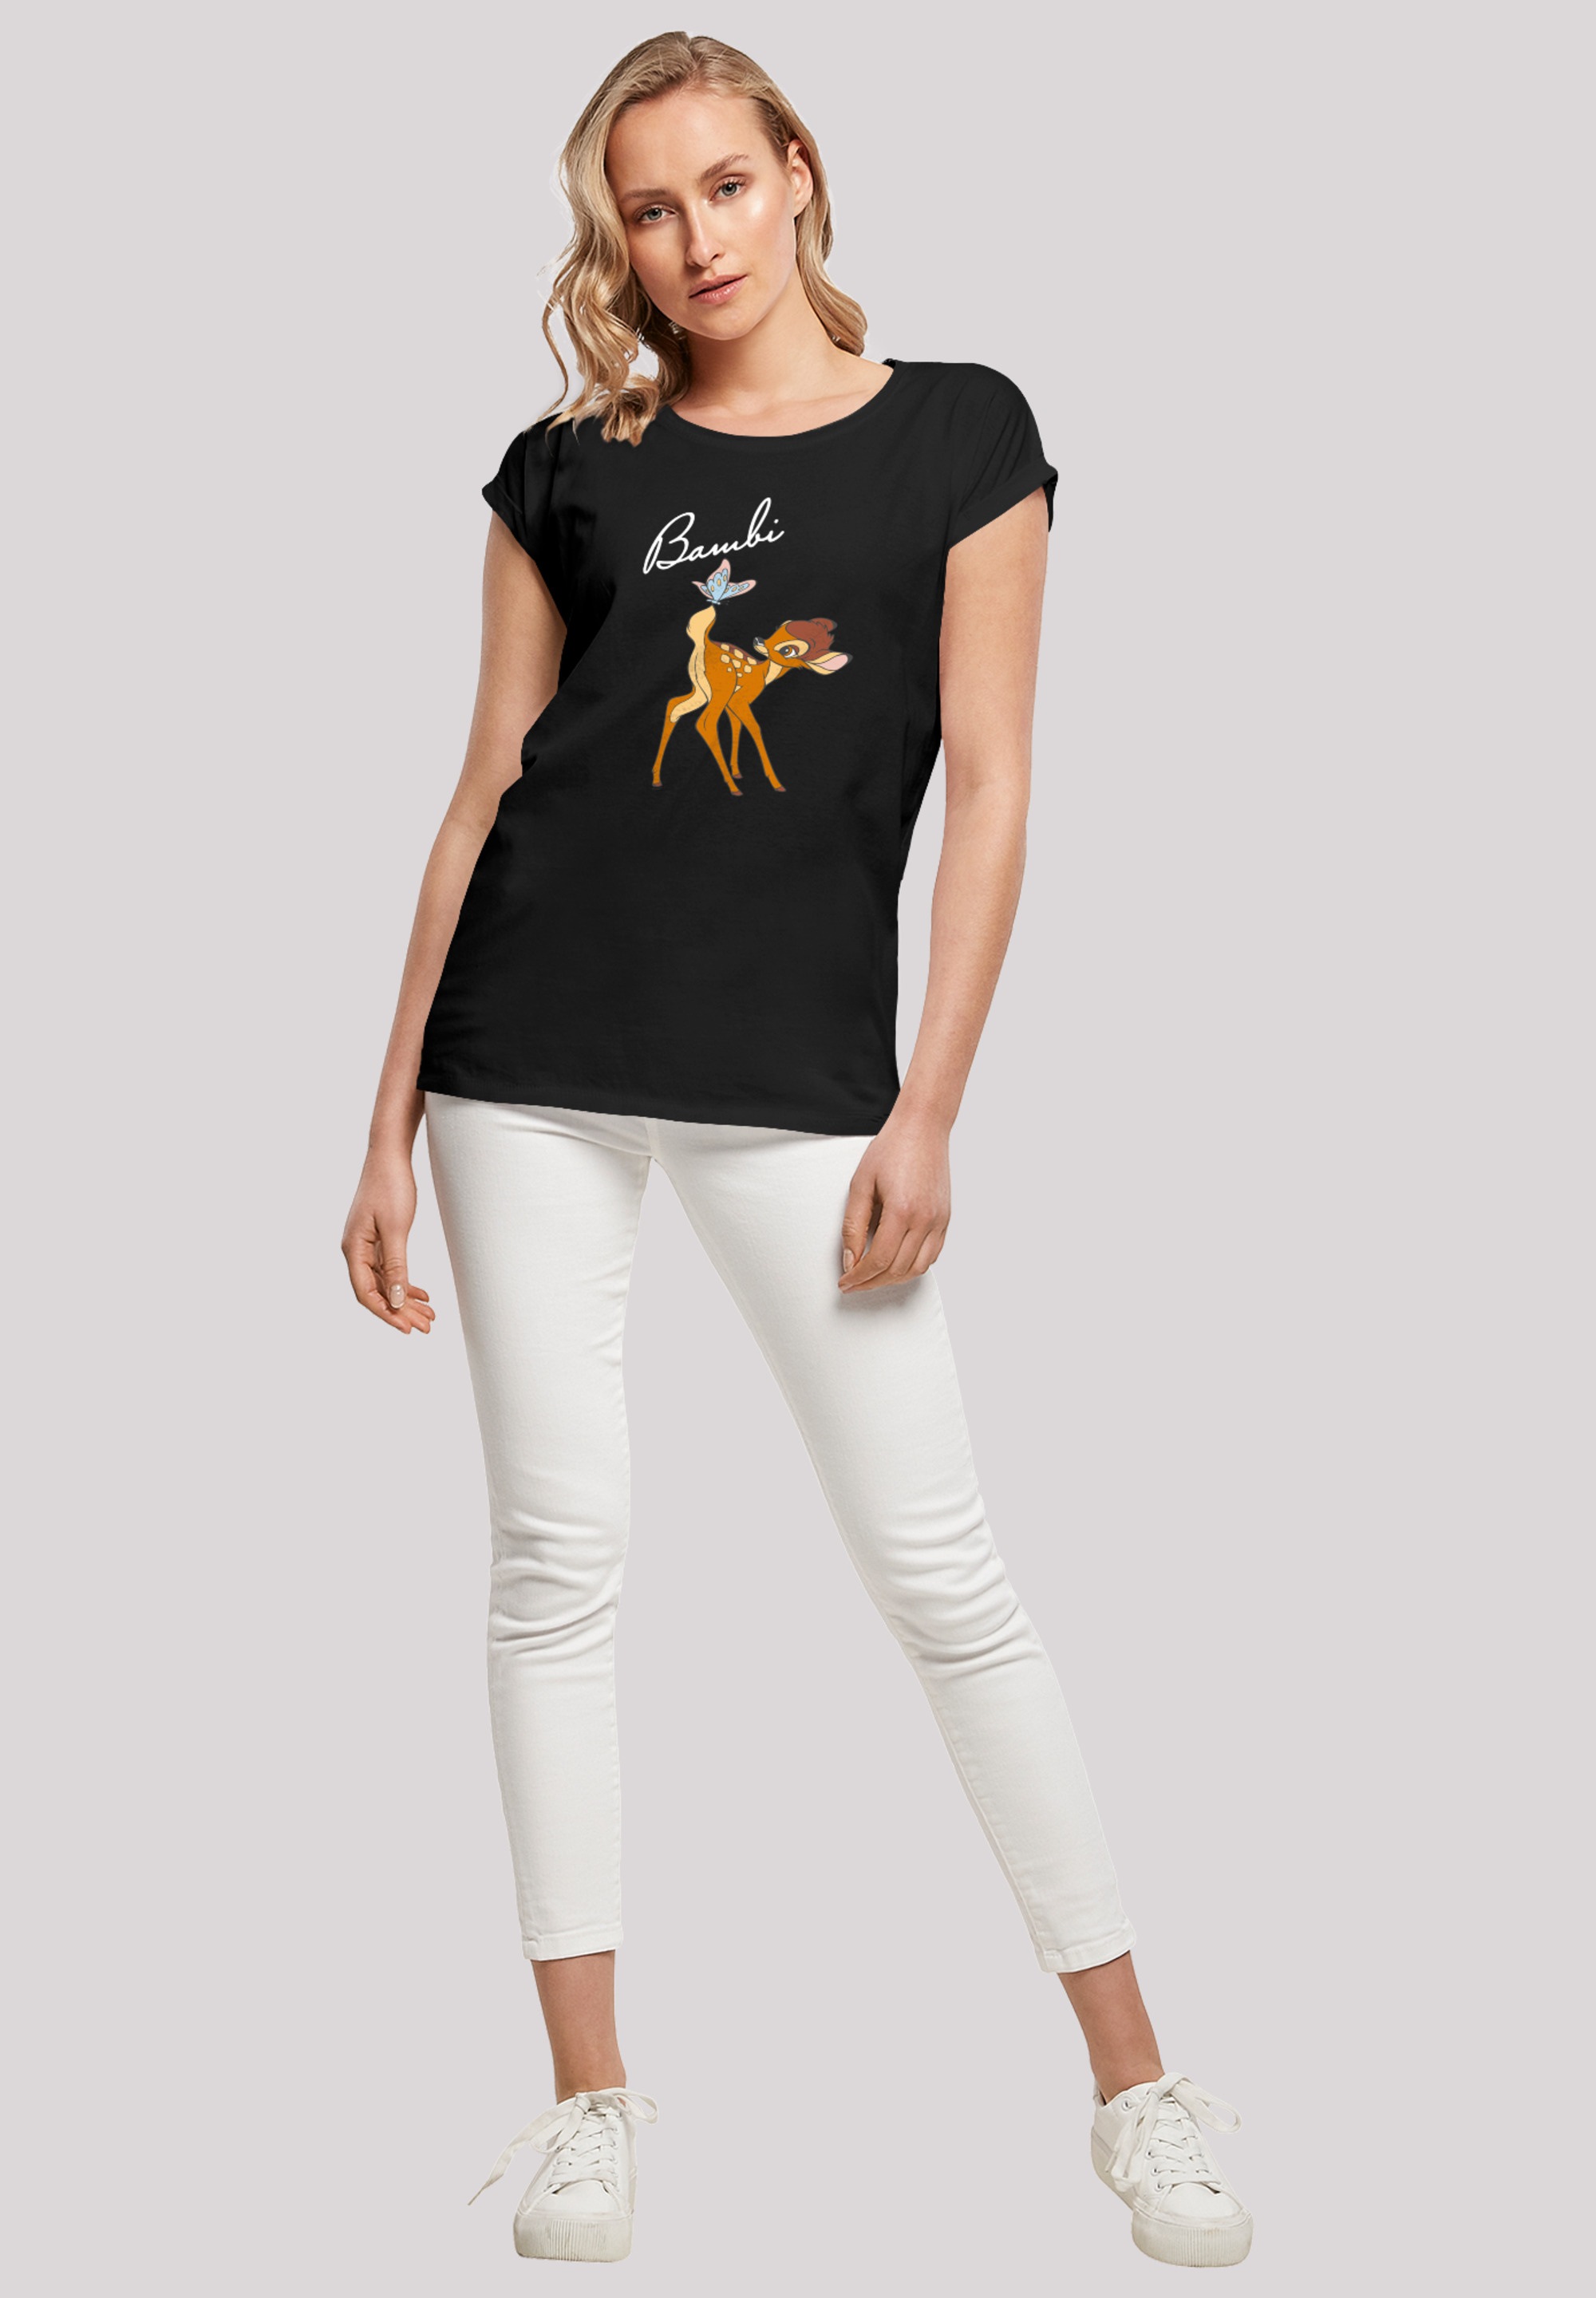 | Schmetterling Tail«, Print für Bambi F4NT4STIC BAUR T-Shirt bestellen »Disney